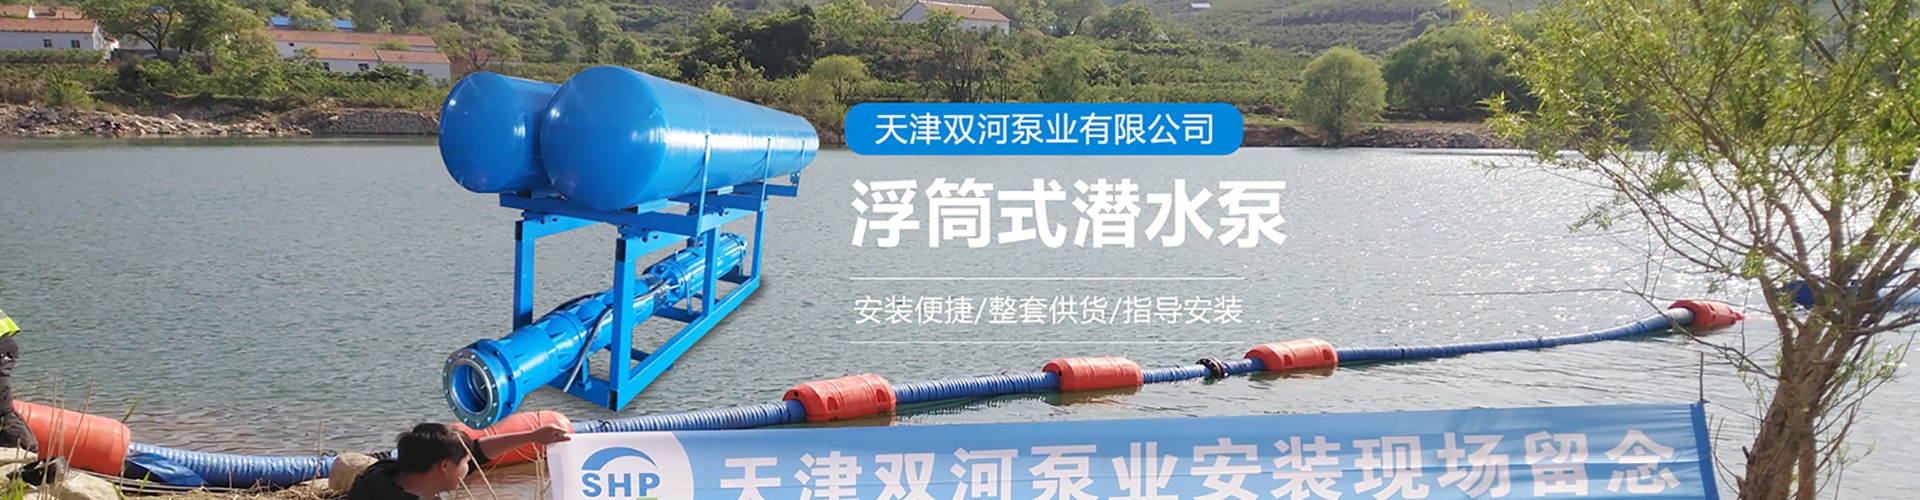 天津双河泵业有限公司